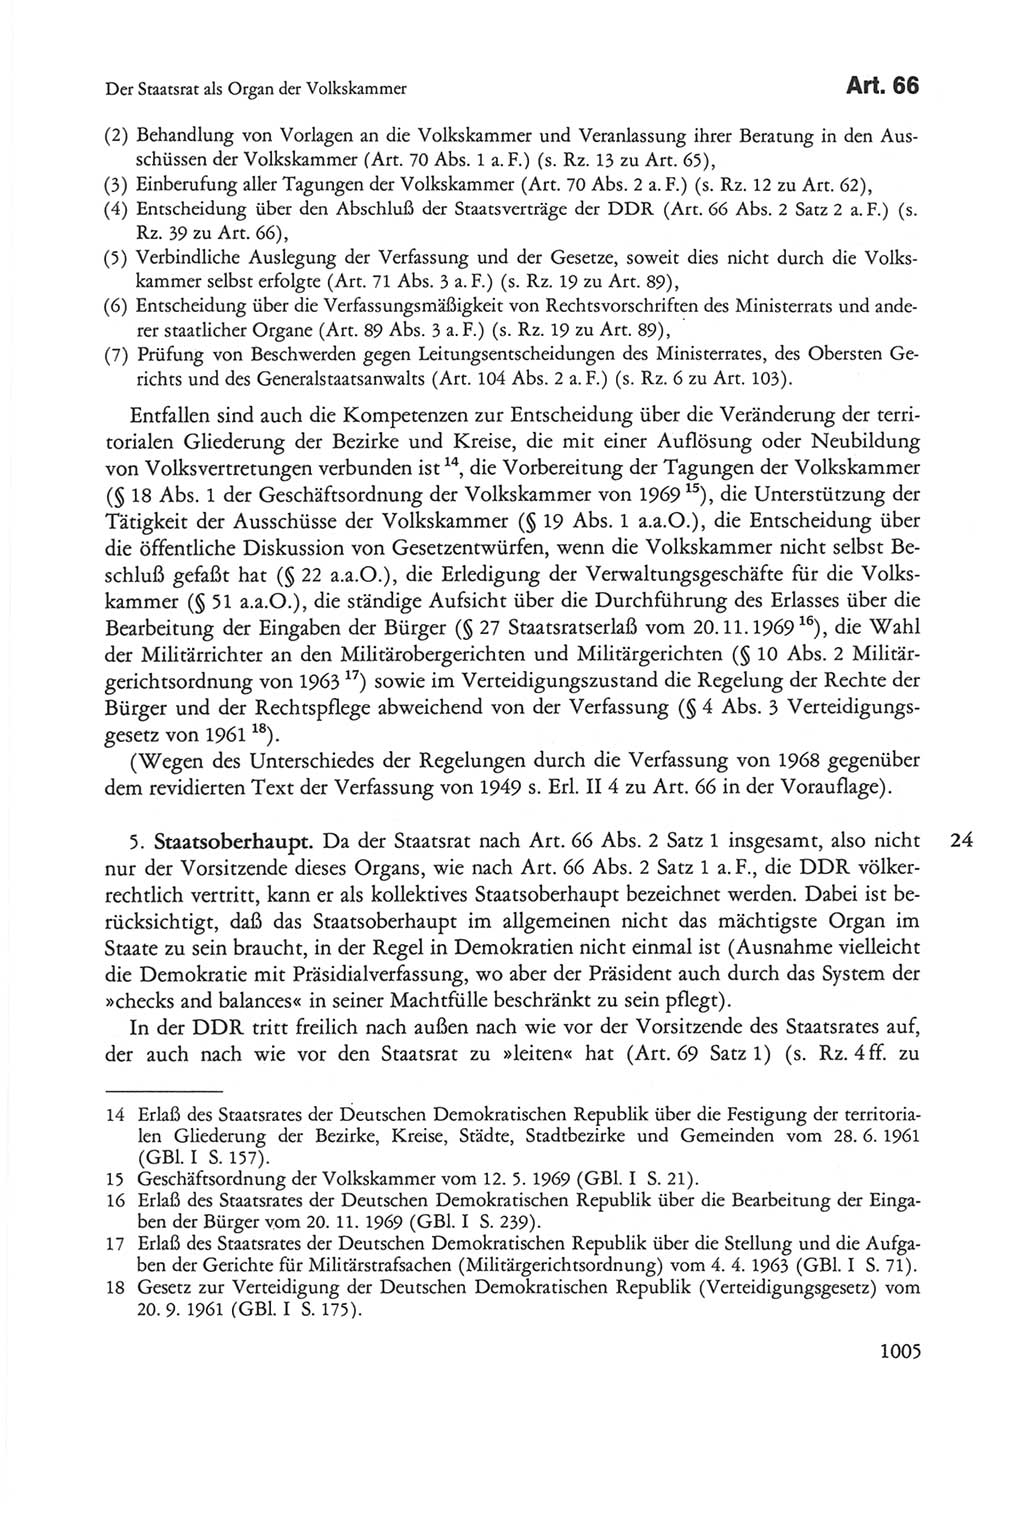 Die sozialistische Verfassung der Deutschen Demokratischen Republik (DDR), Kommentar mit einem Nachtrag 1997, Seite 1005 (Soz. Verf. DDR Komm. Nachtr. 1997, S. 1005)